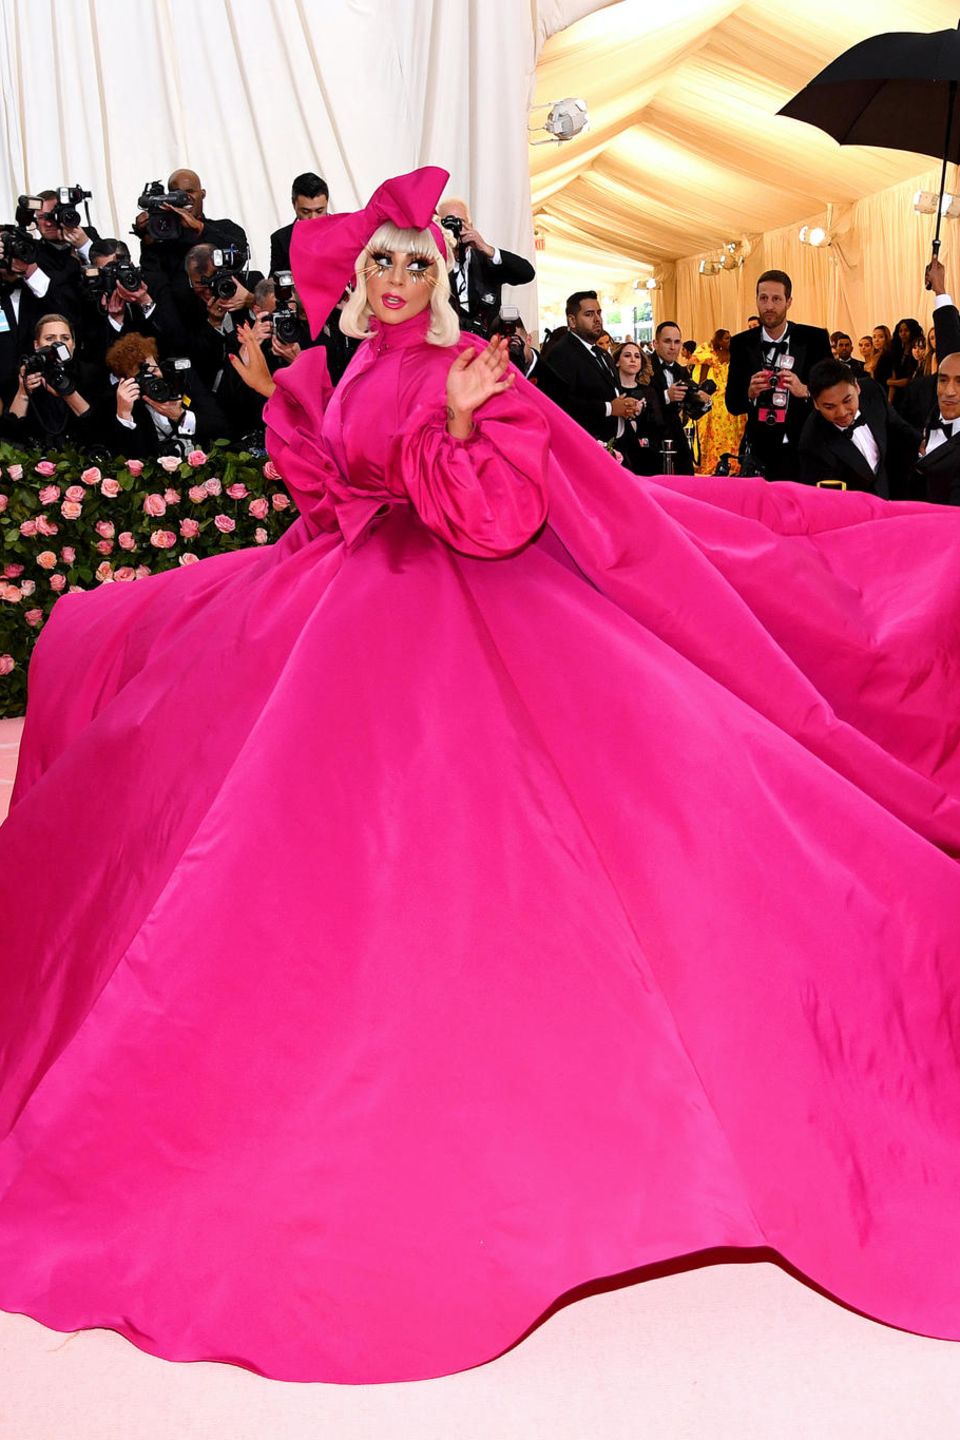 Lady Gaga überrascht nicht mit einem, sondern mit vier Looks. Das rosafarbene Mantelkleid von Brandon Maxwell ist erst der Anfang ihres spektakulären Auftritts. Das Beste kommt erst noch.